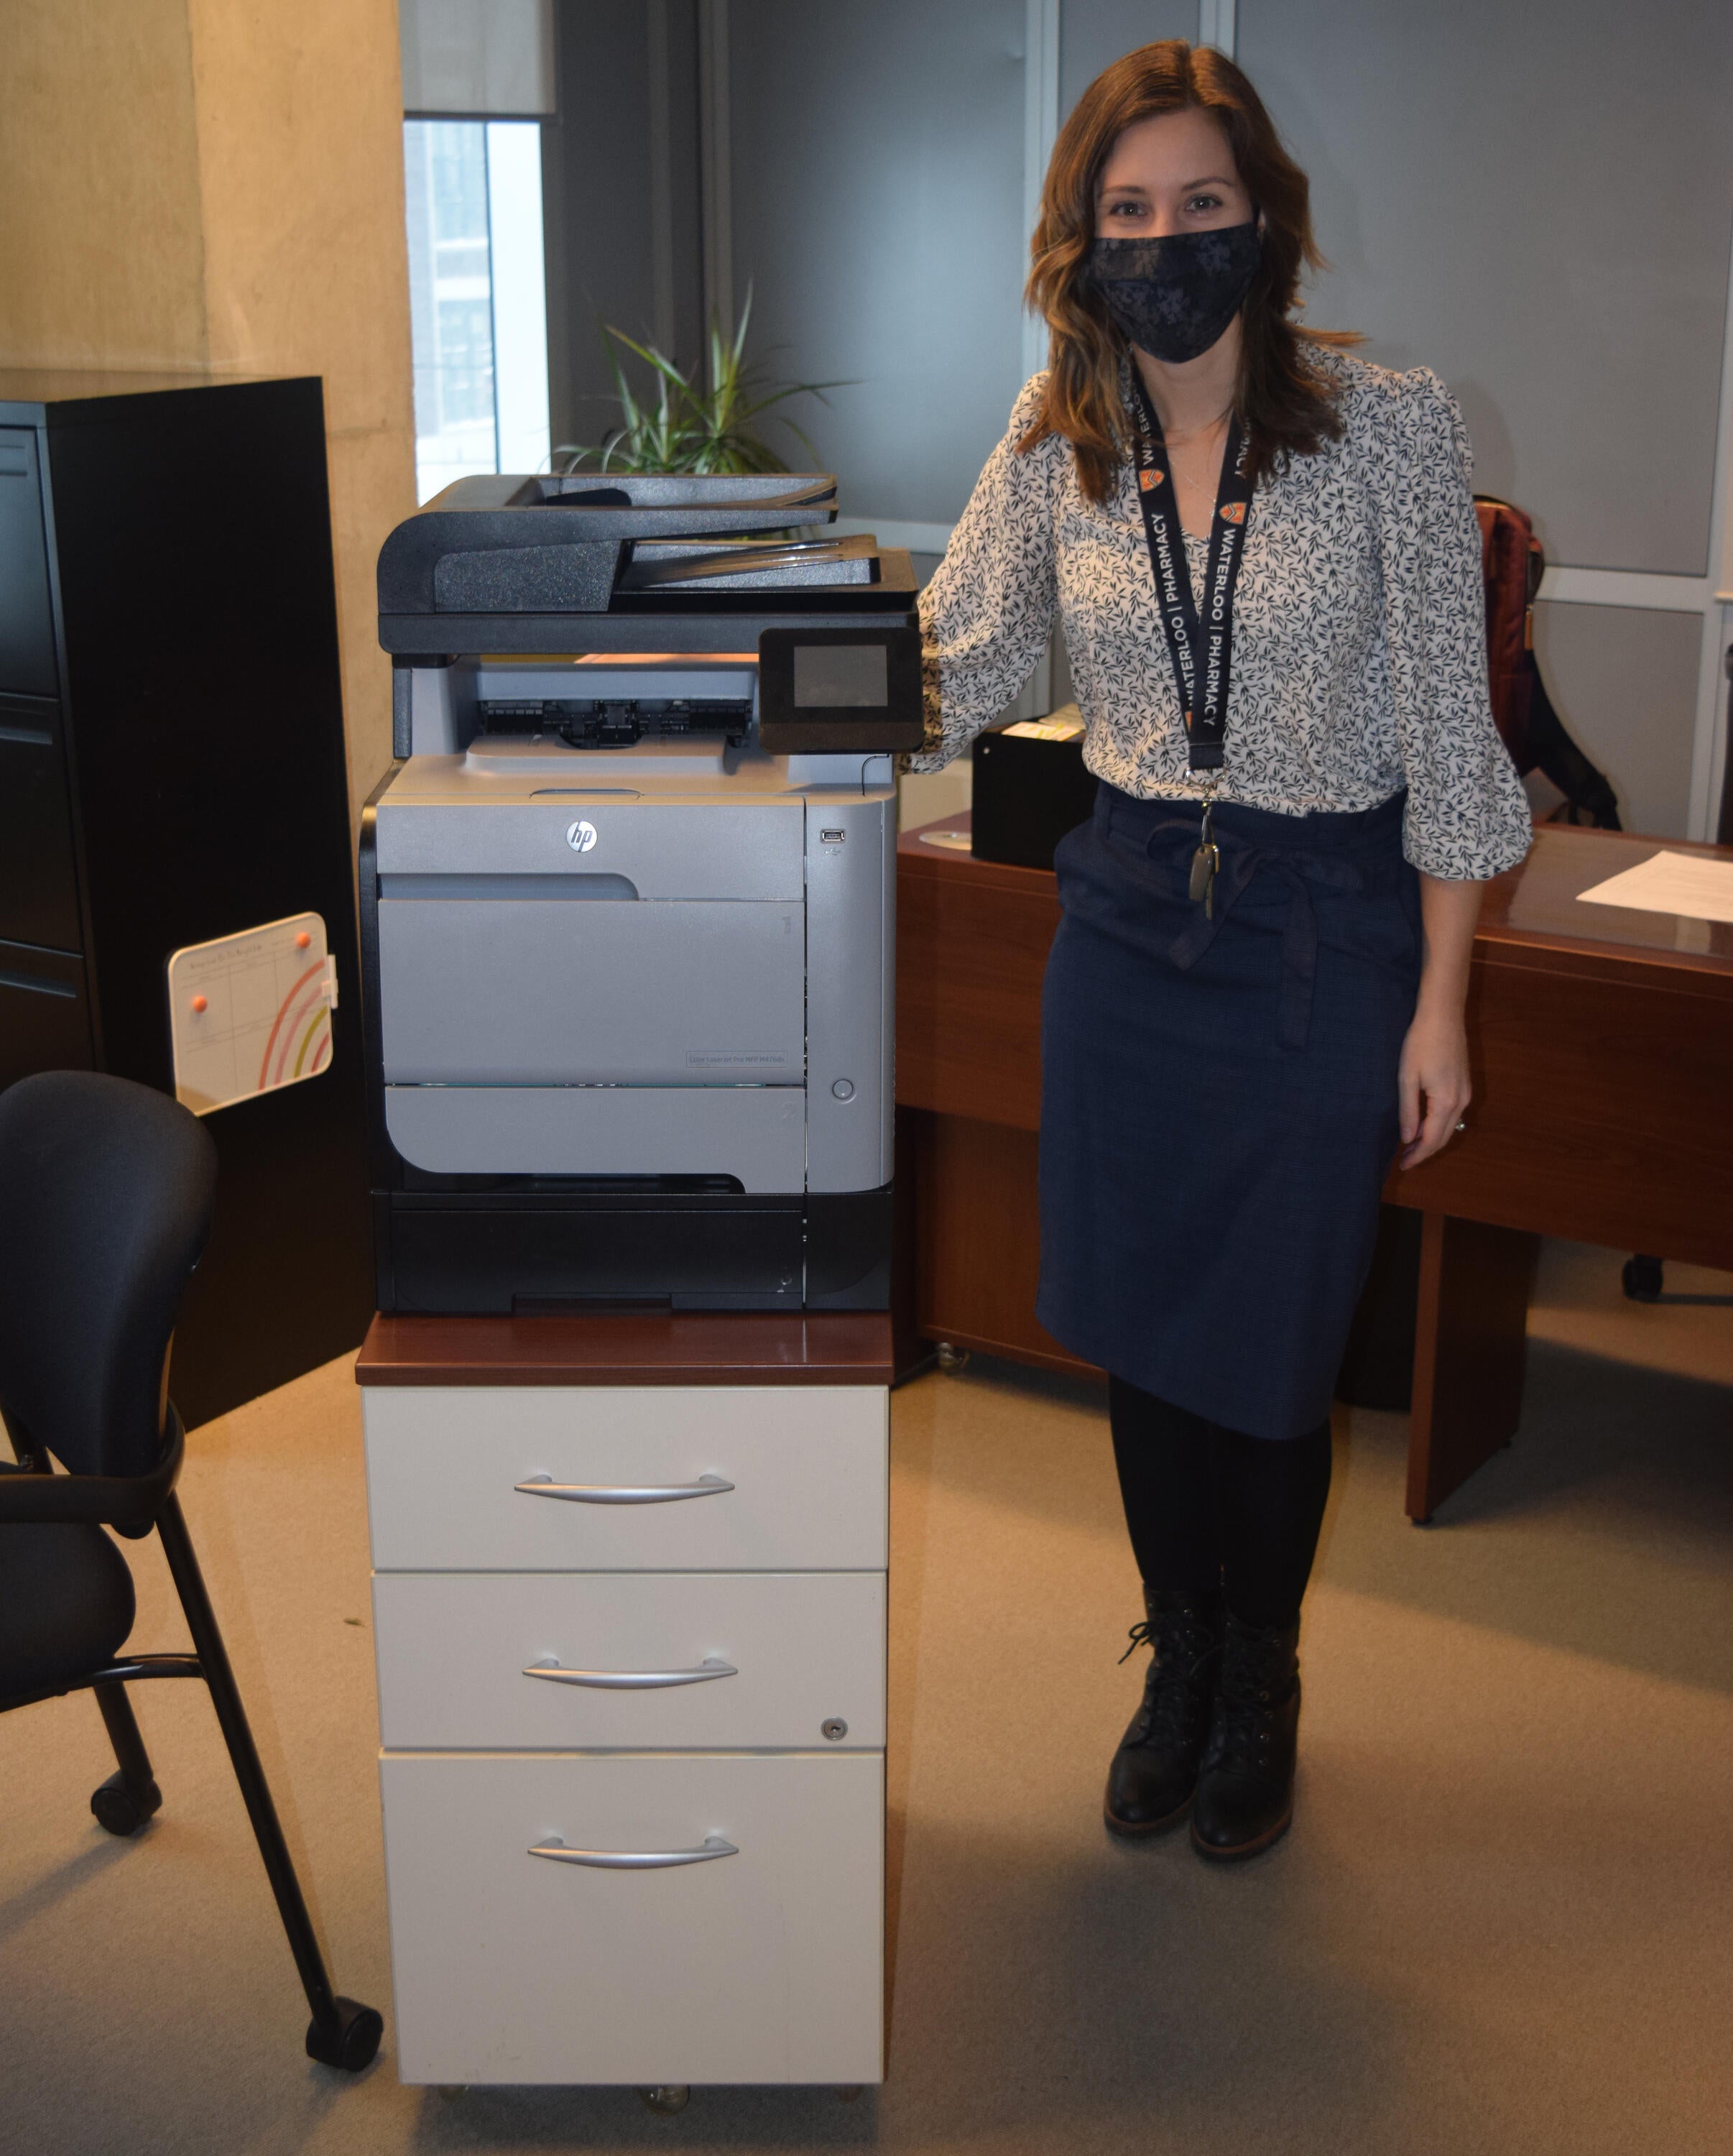 Kiaitlin Bykoski wearing a mask next to her printer